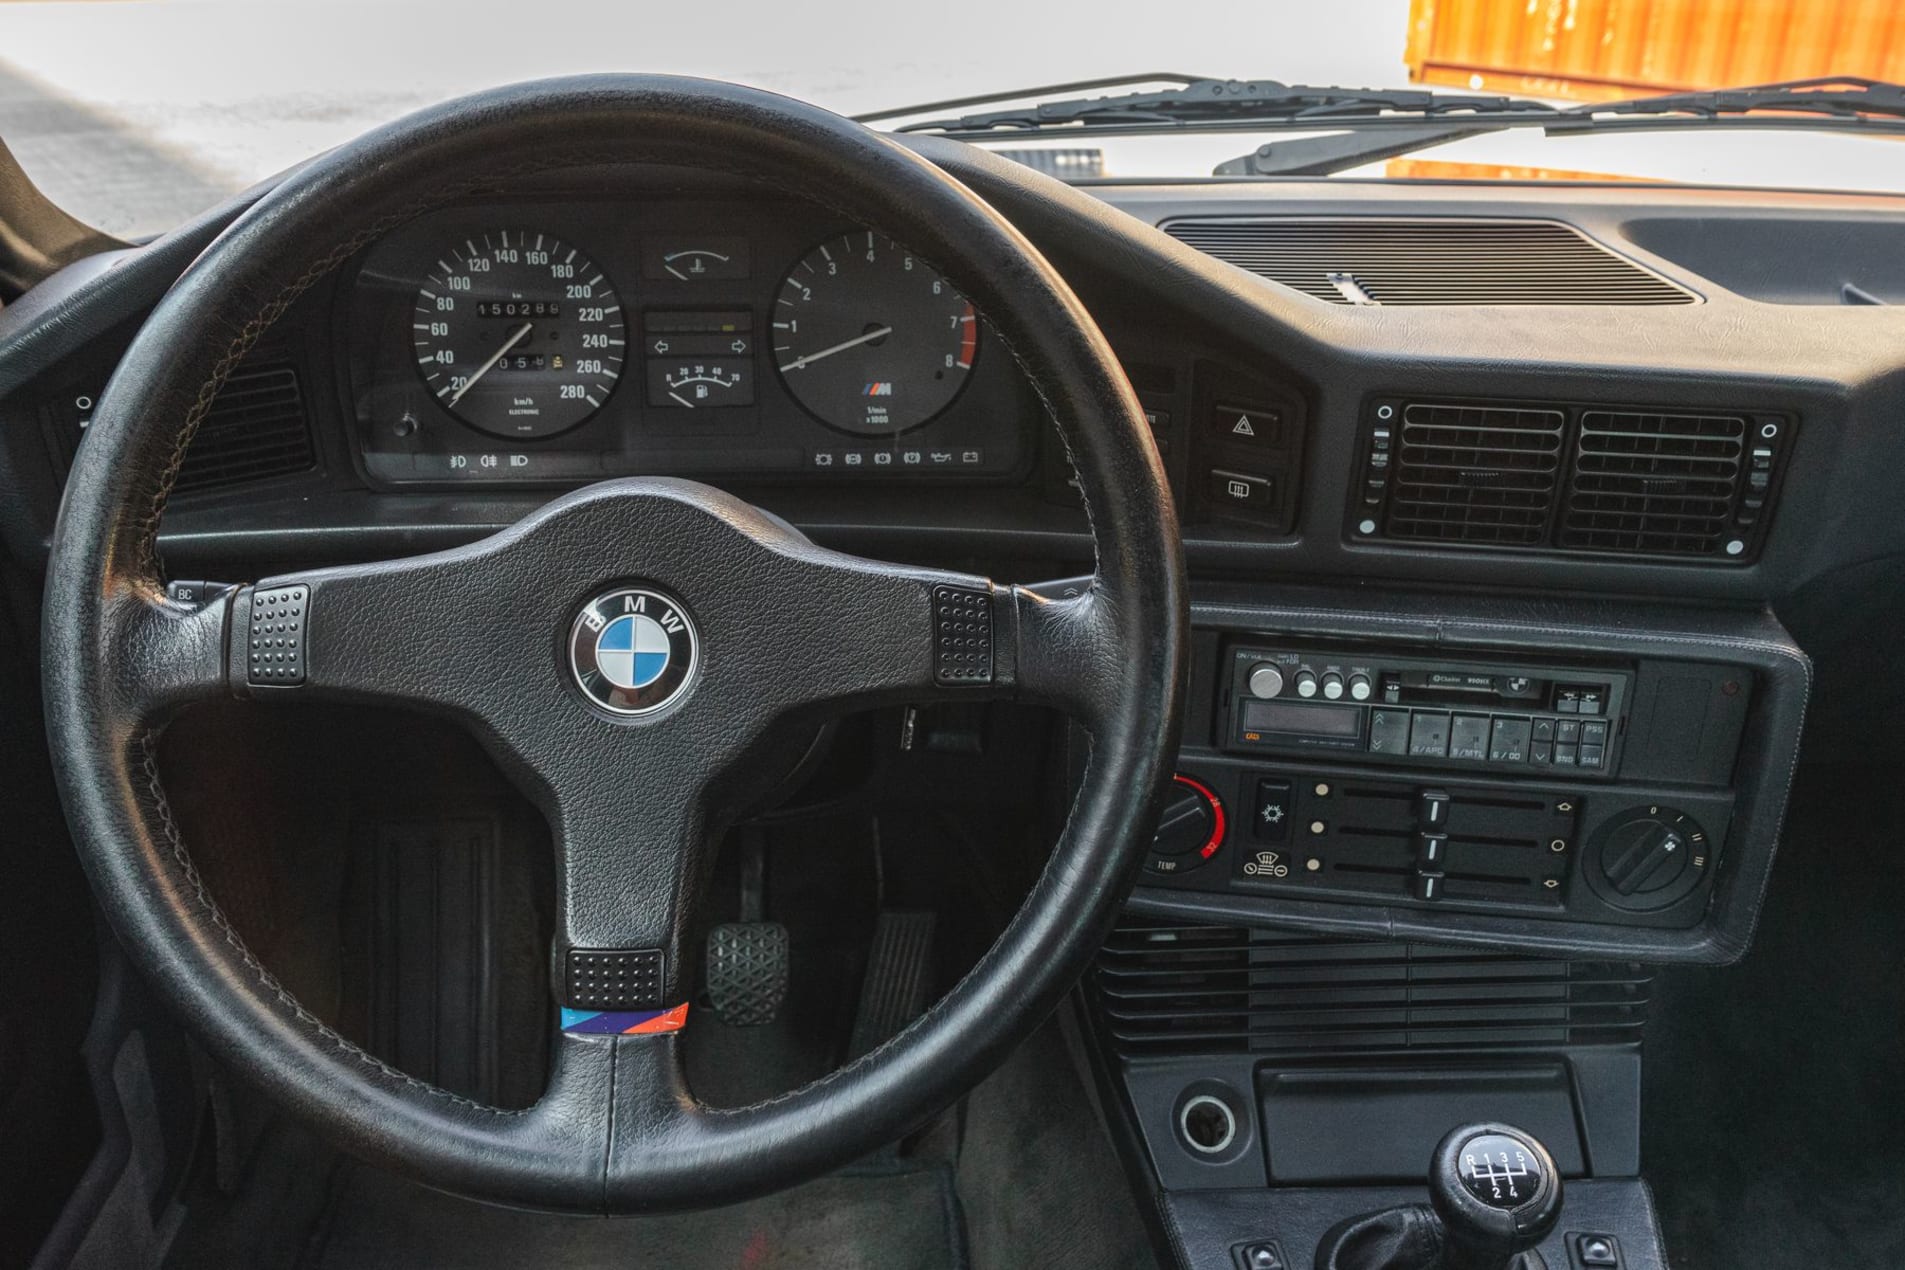 BMW M5 E28 1987